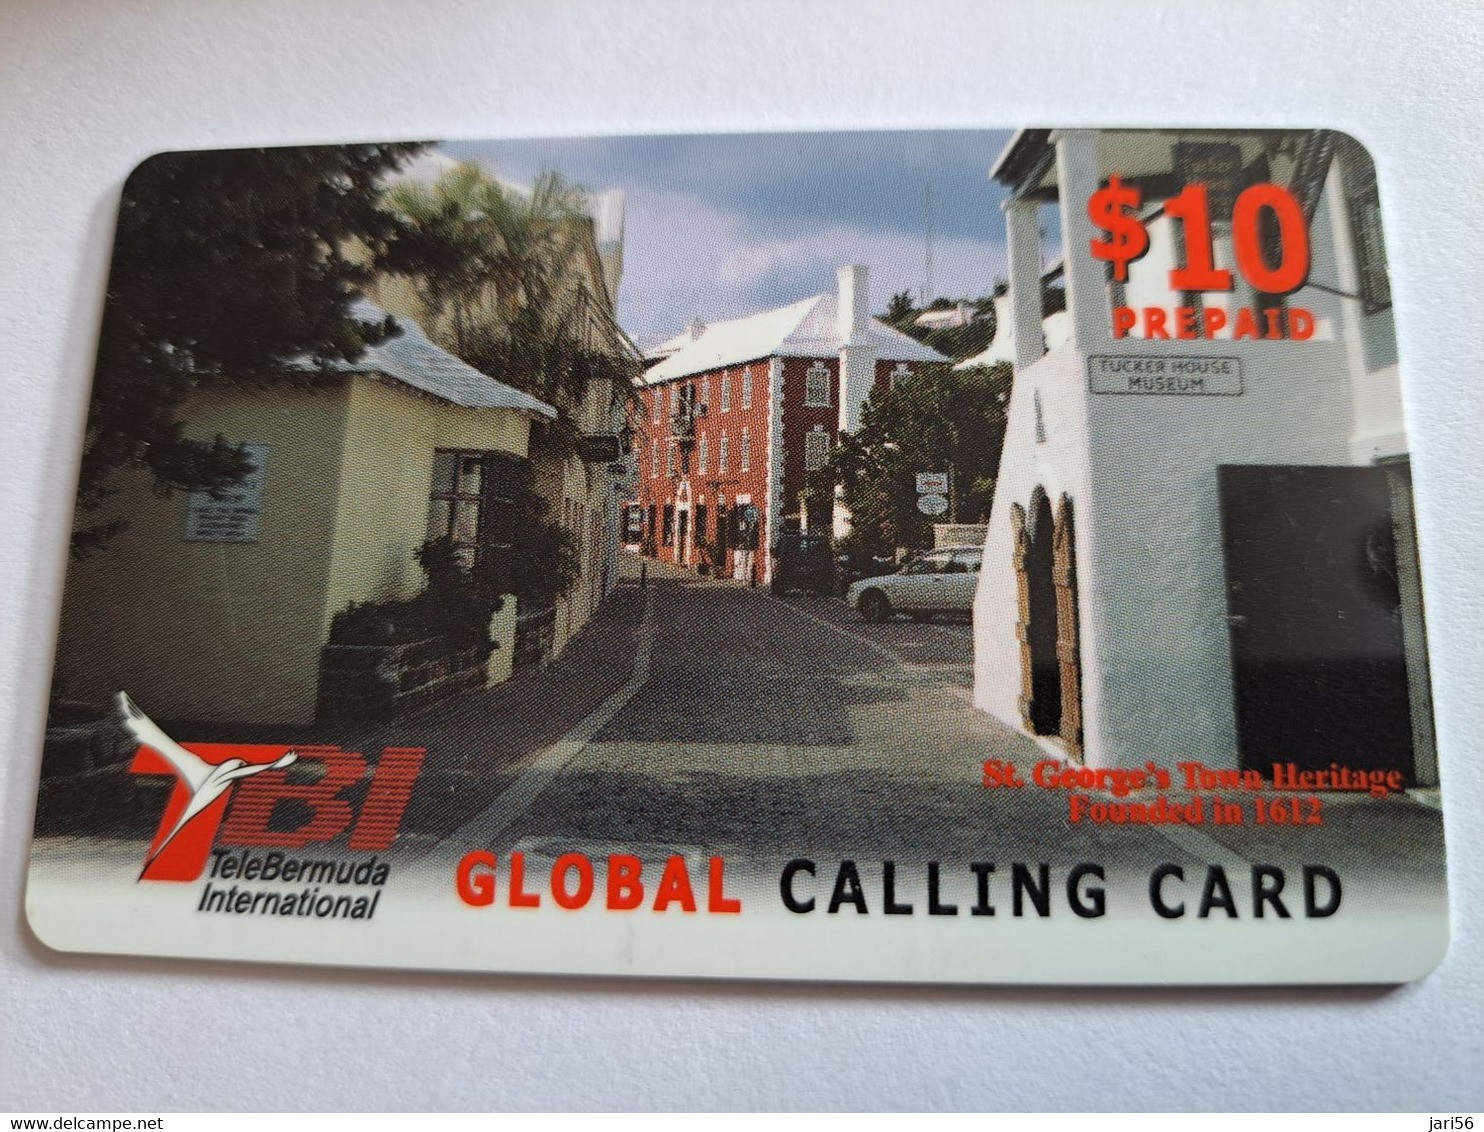 BERMUDA  $10 $ IN RED   -  BERMUDA  STREET SCENE       PREPAID CARD  Fine USED  TBI TELEBERMUDA INTERNATIONAL **10274** - Bermudes